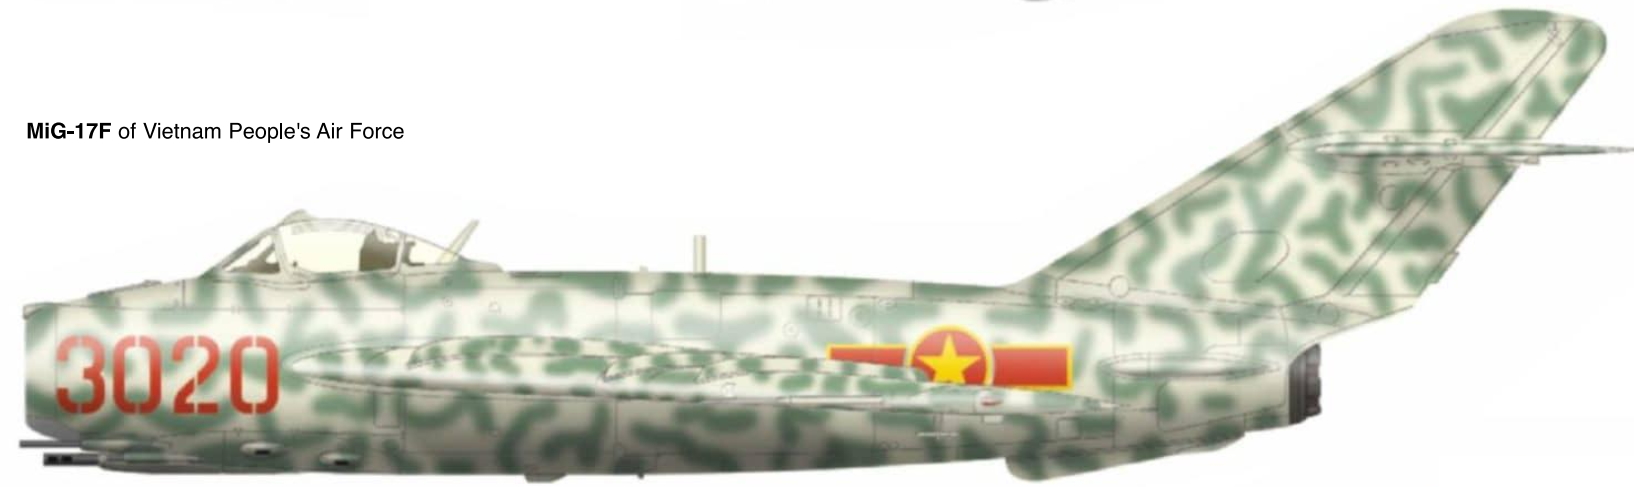 1706507113 742 MiG 17 in Vietnam